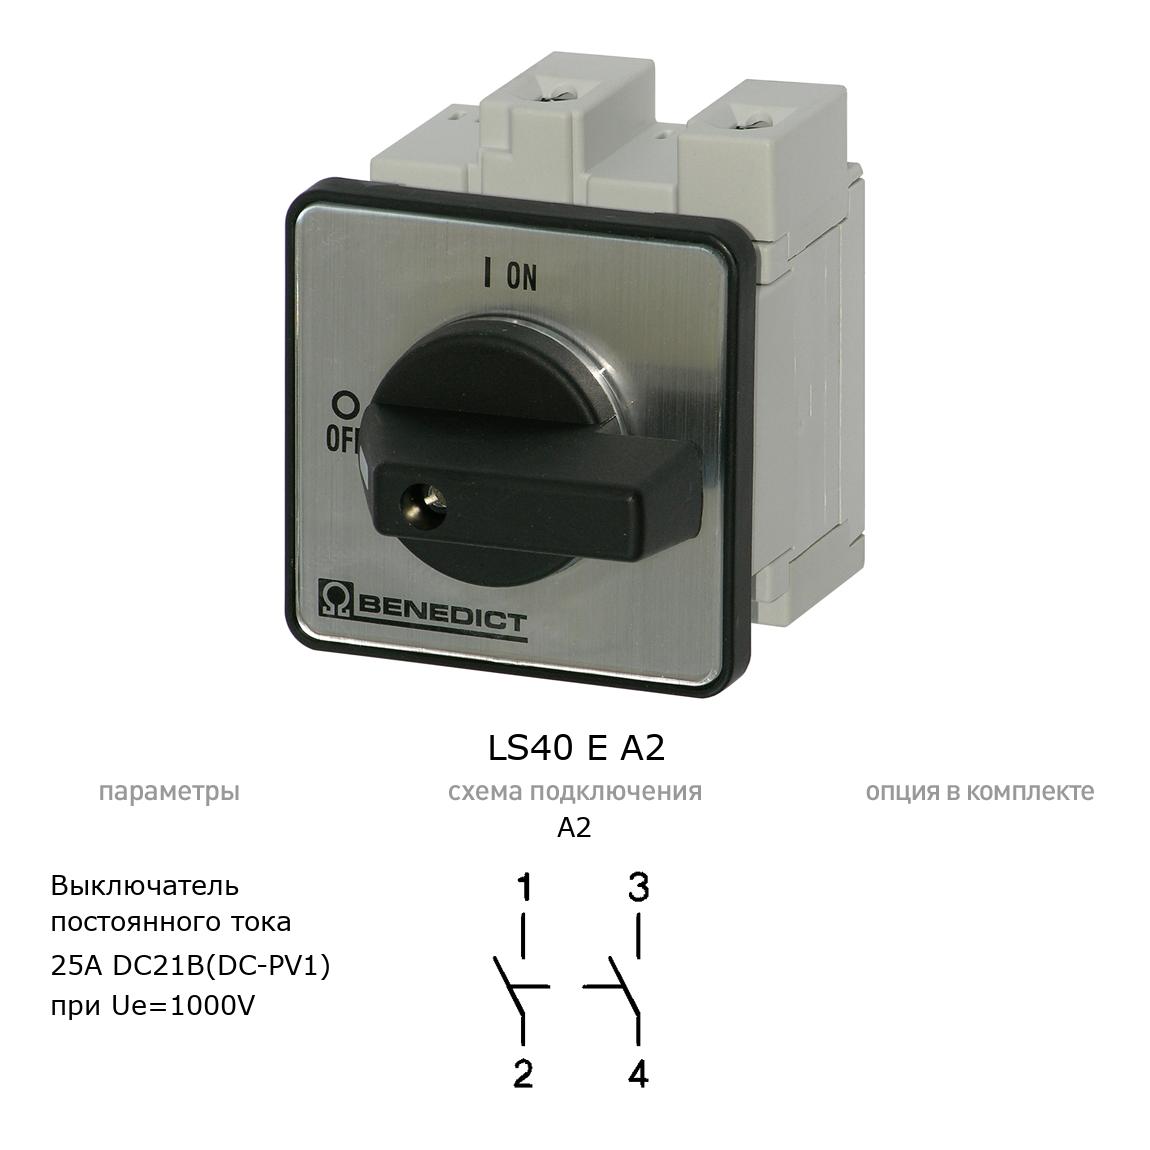 Кулачковый переключатель для постоянного тока (DC) LS40 E A2 BENEDICT